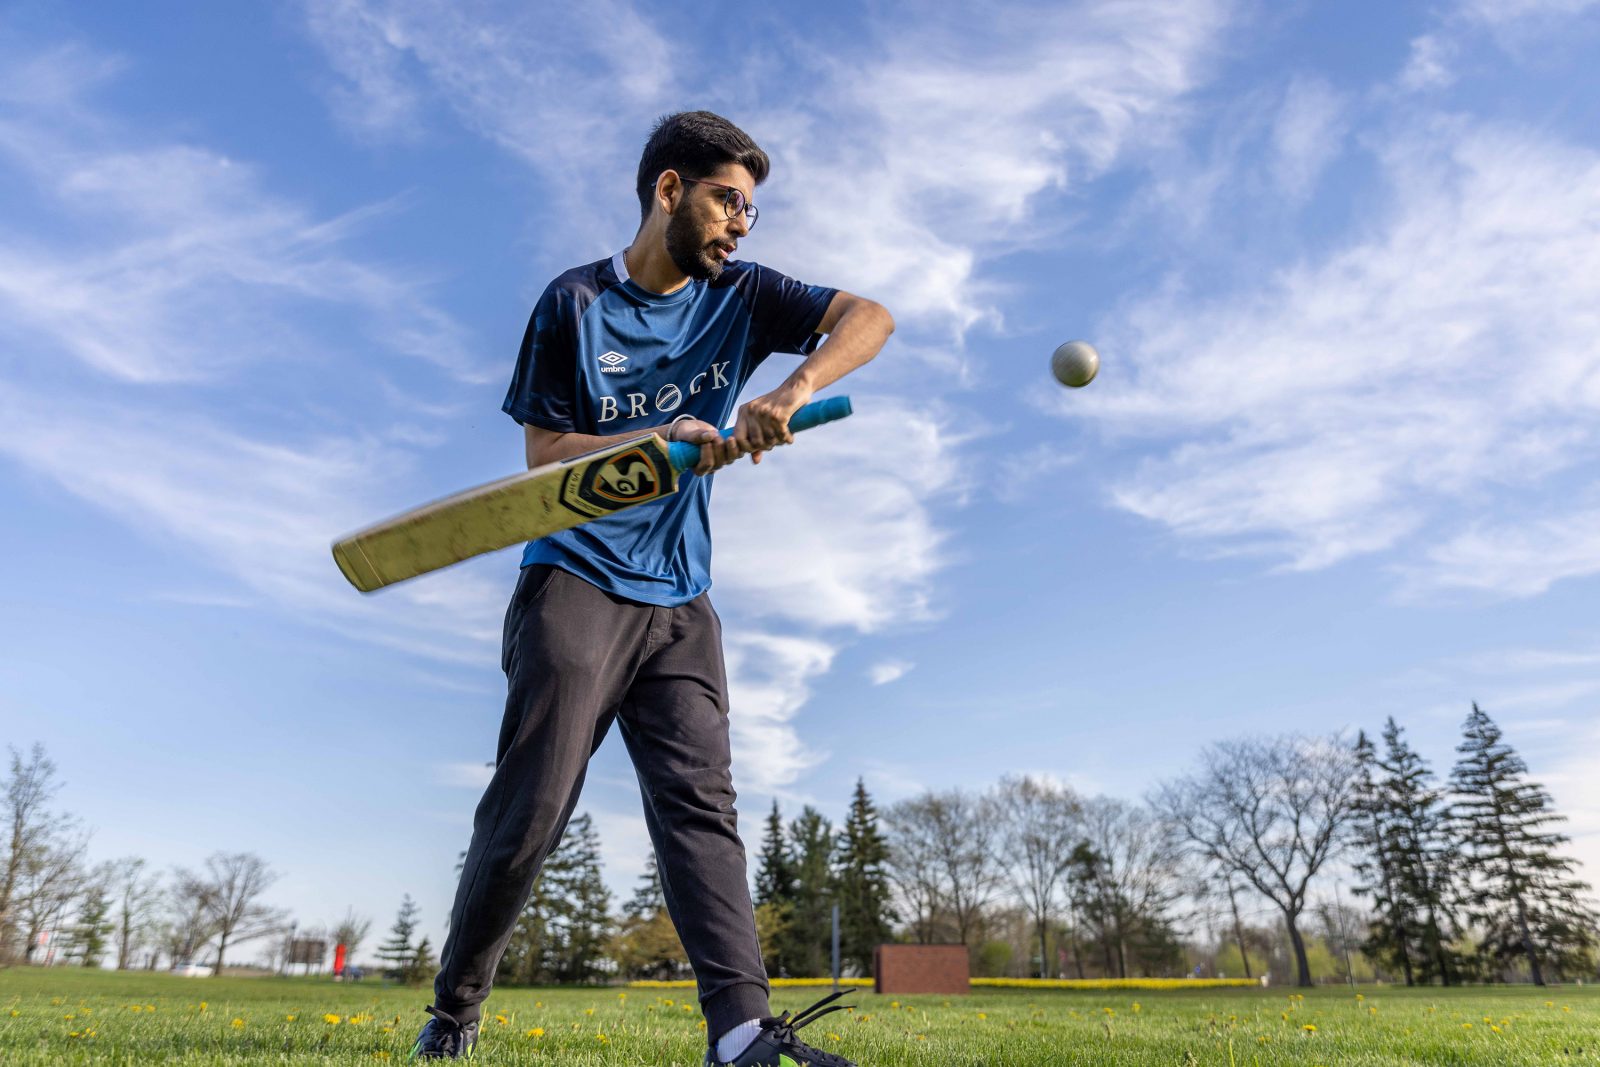 A cricket player swings a bat in an open field.